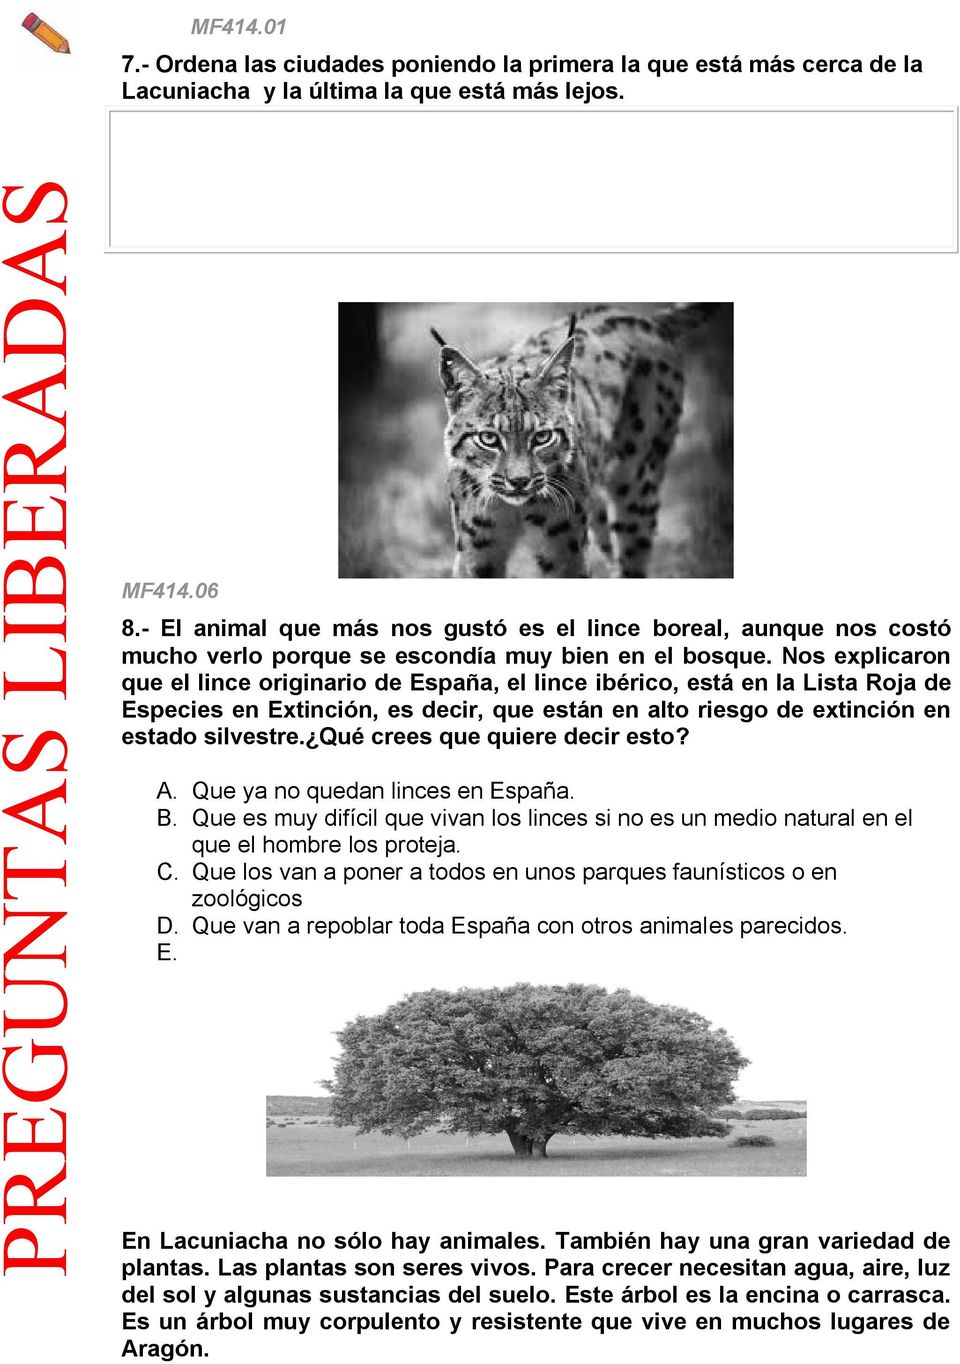 Nos explicaron que el lince originario de España, el lince ibérico, está en la Lista Roja de Especies en Extinción, es decir, que están en alto riesgo de extinción en estado silvestre.